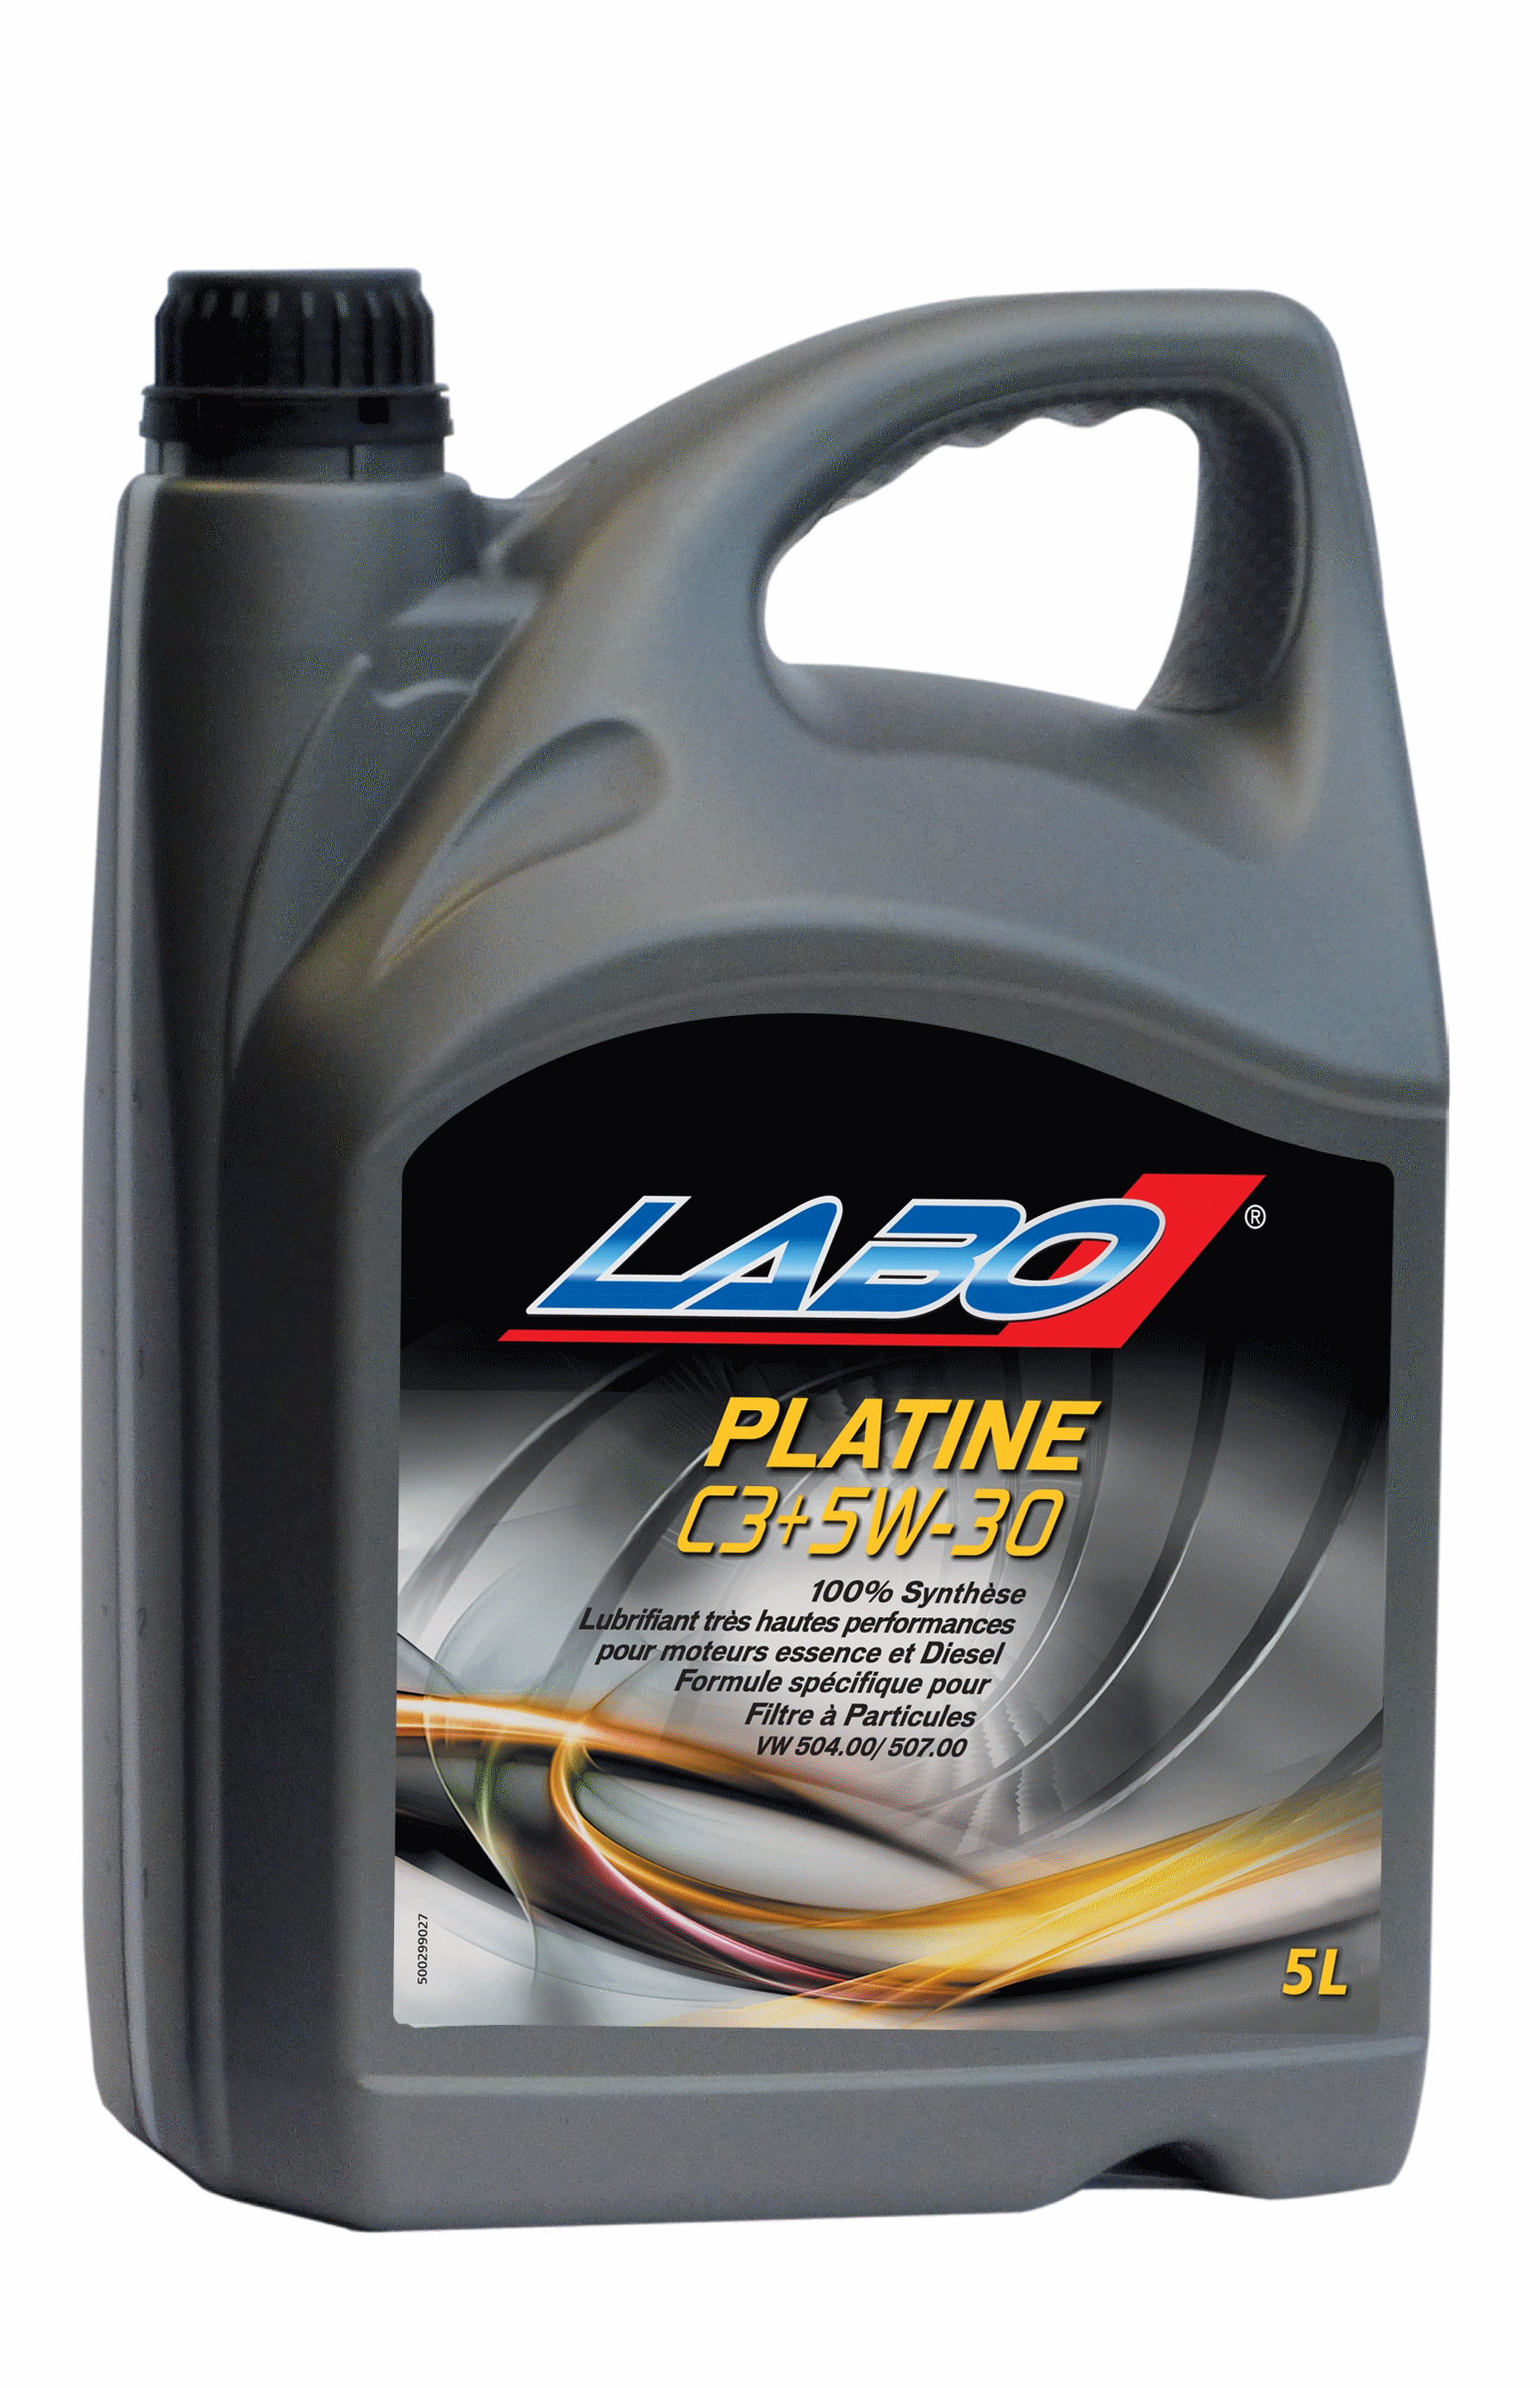 Huile Platine LABO 100% Synthèse trés hautes performances C-3+ 5W30 Filtre à Particules VW504.00/507.00 5  Litres